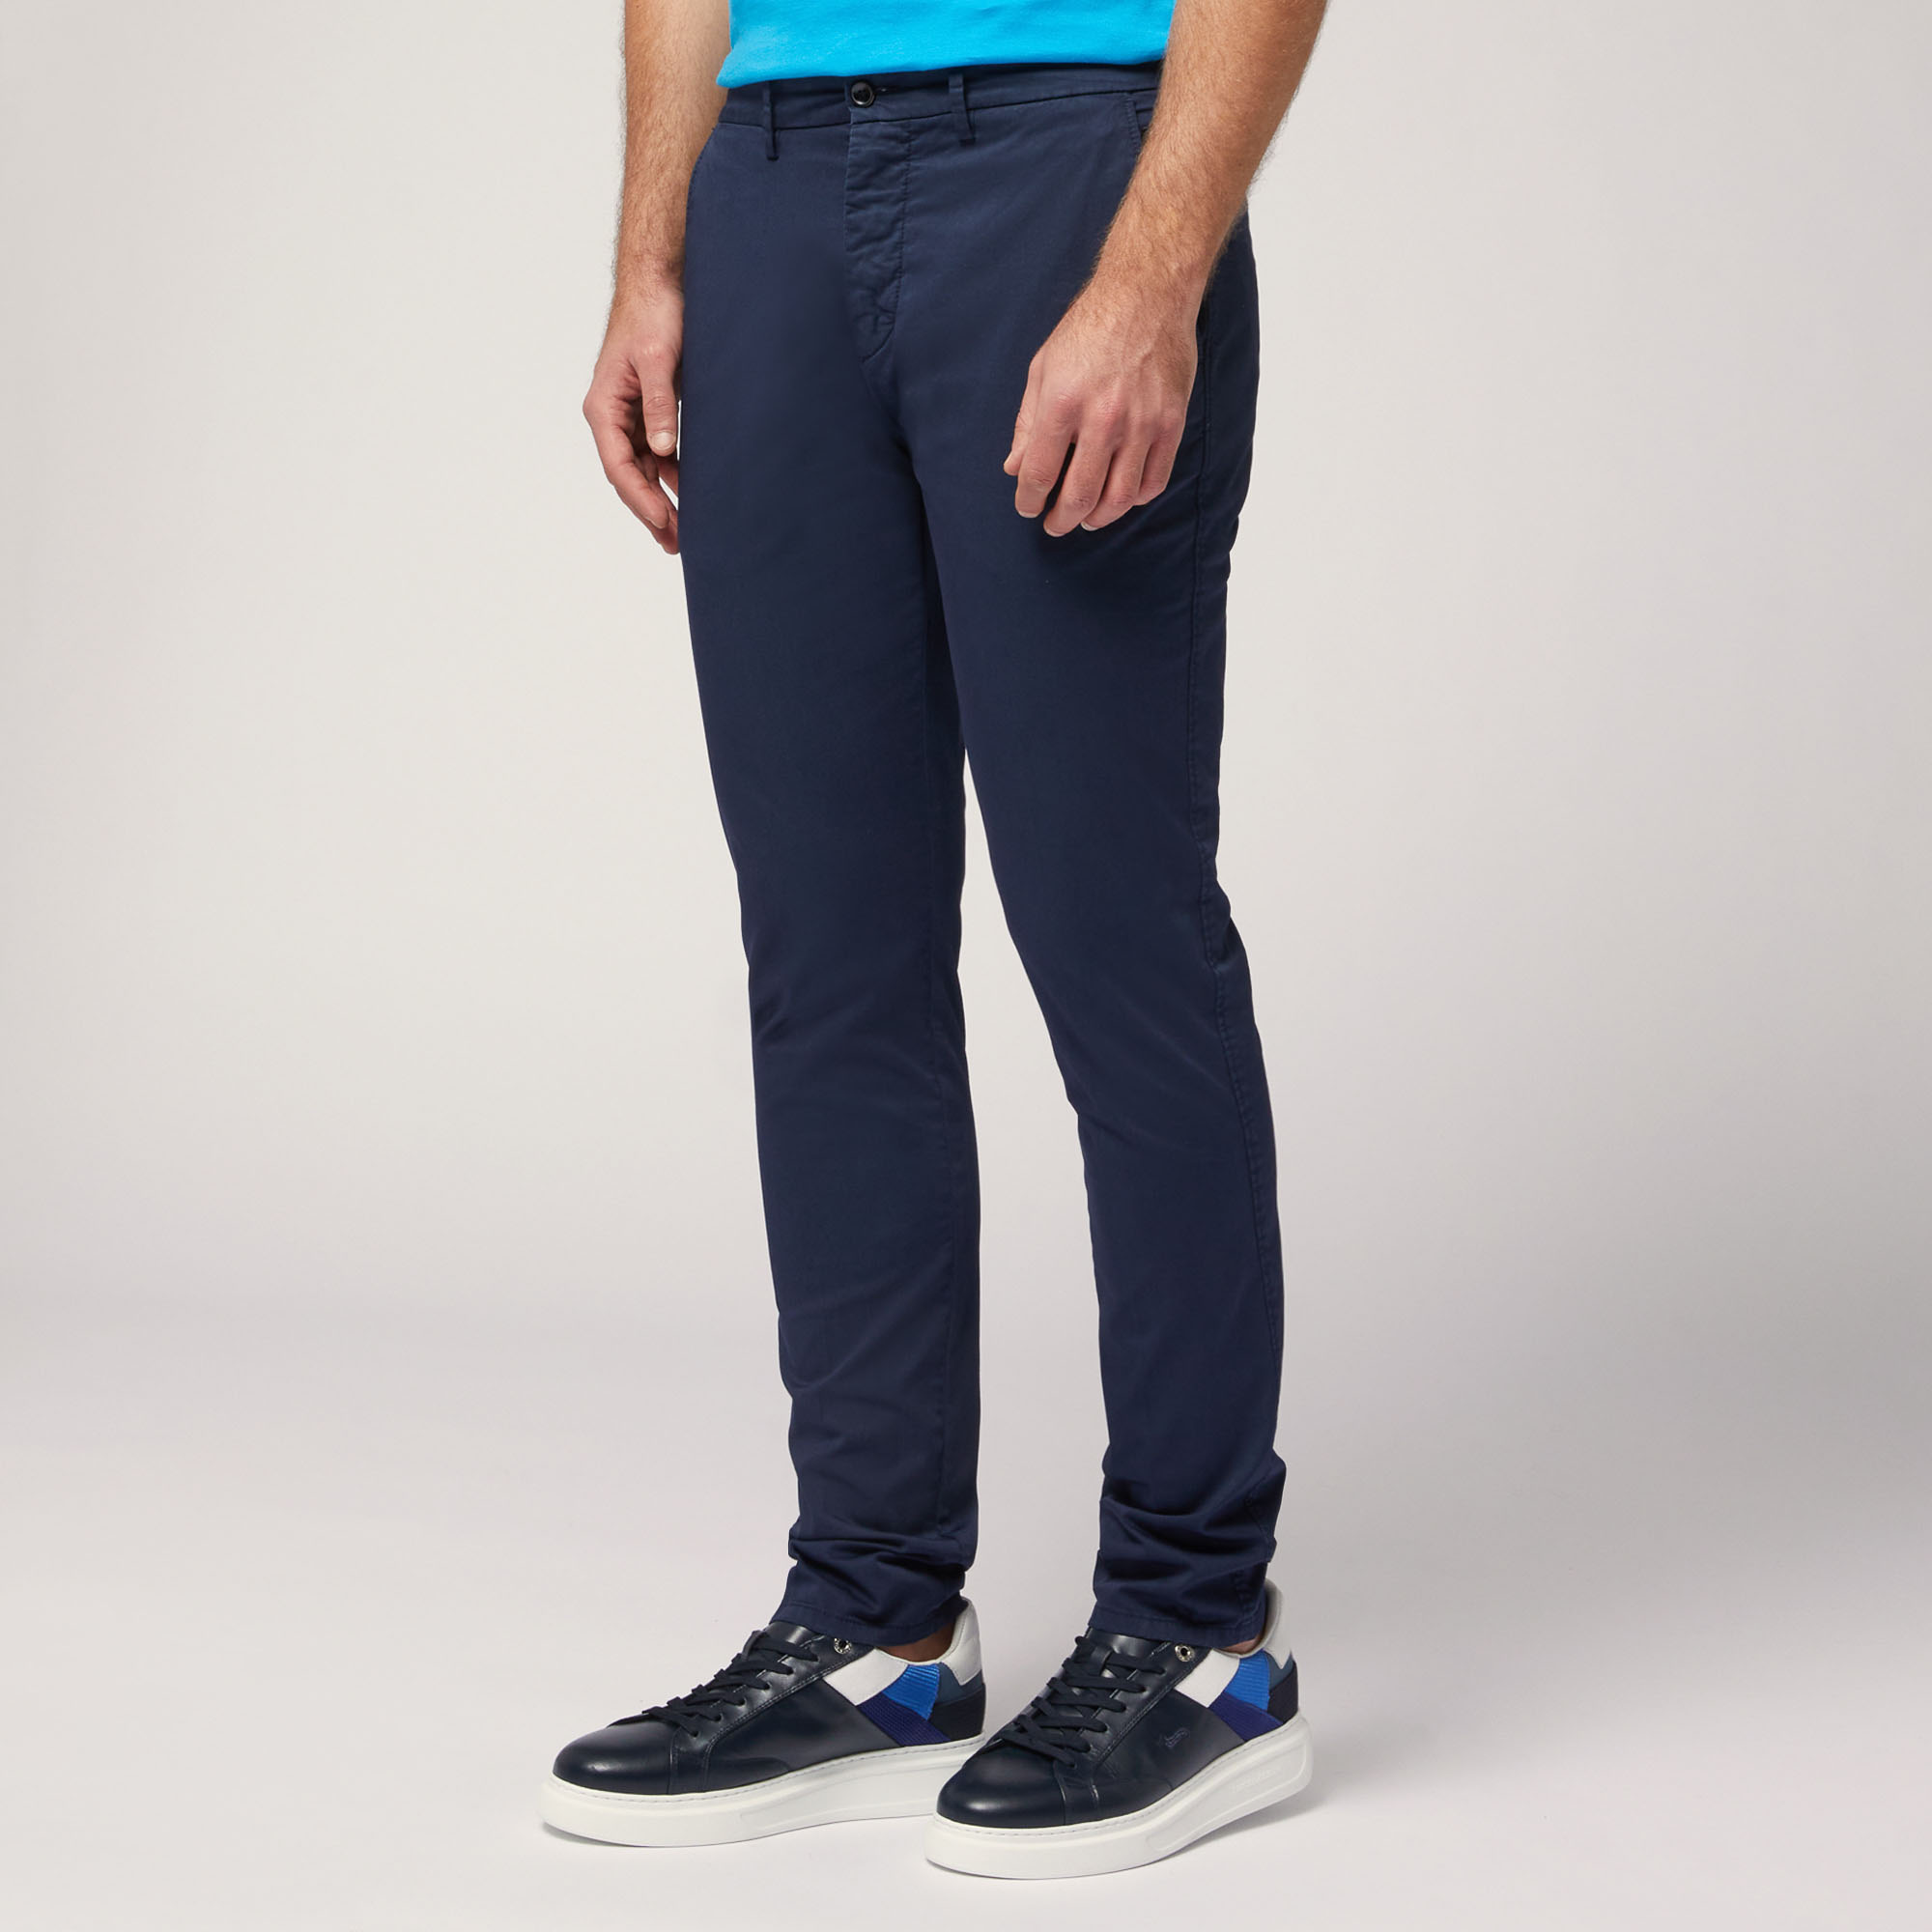 Pantaloni Chino Narrow Fit, Blu Navy, large